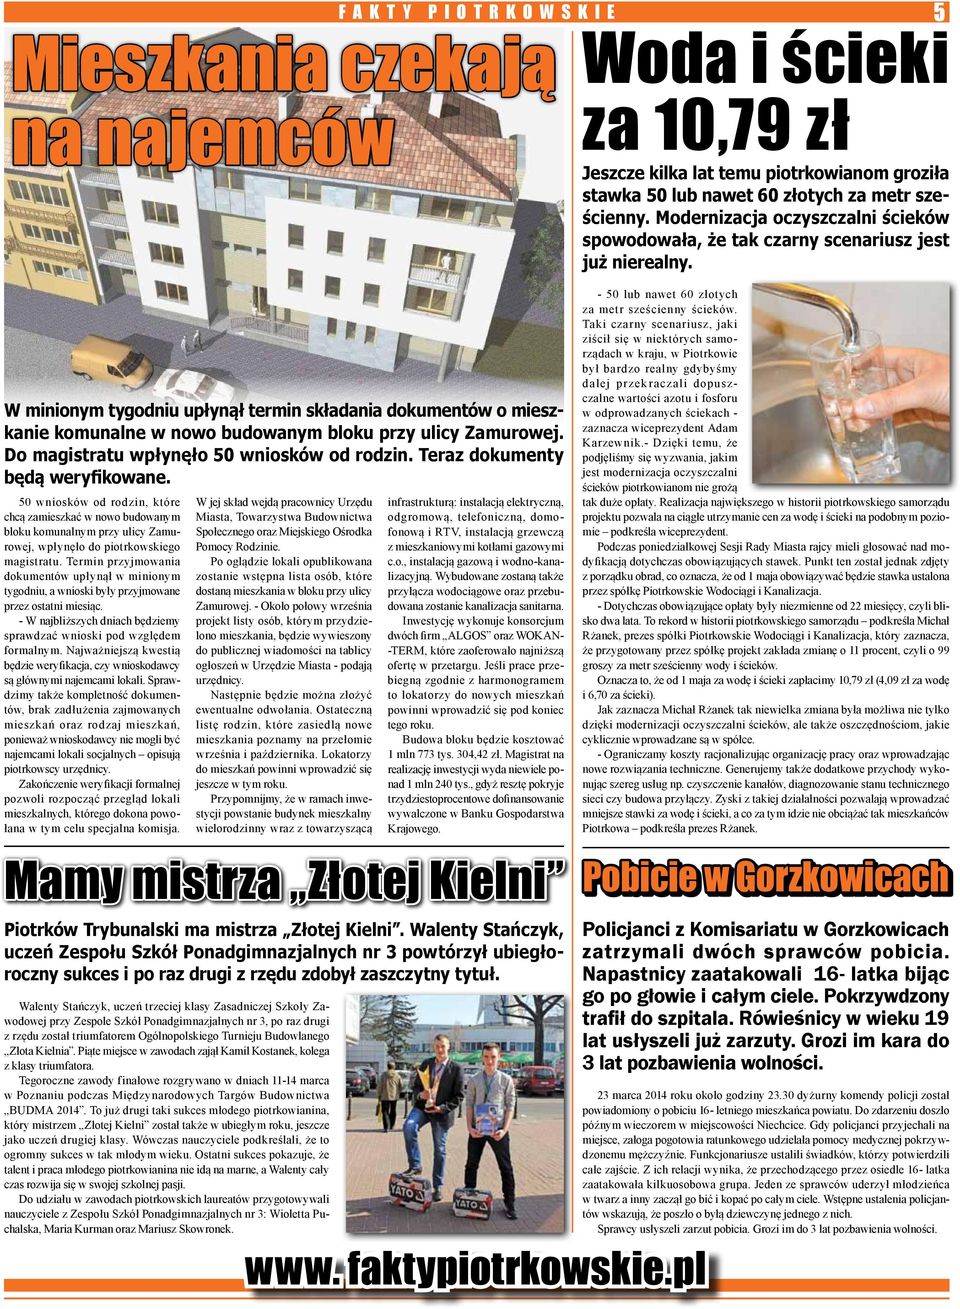 5 W minionym tygodniu upłynął termin składania dokumentów o mieszkanie komunalne w nowo budowanym bloku przy ulicy Zamurowej. Do magistratu wpłynęło 50 wniosków od rodzin.